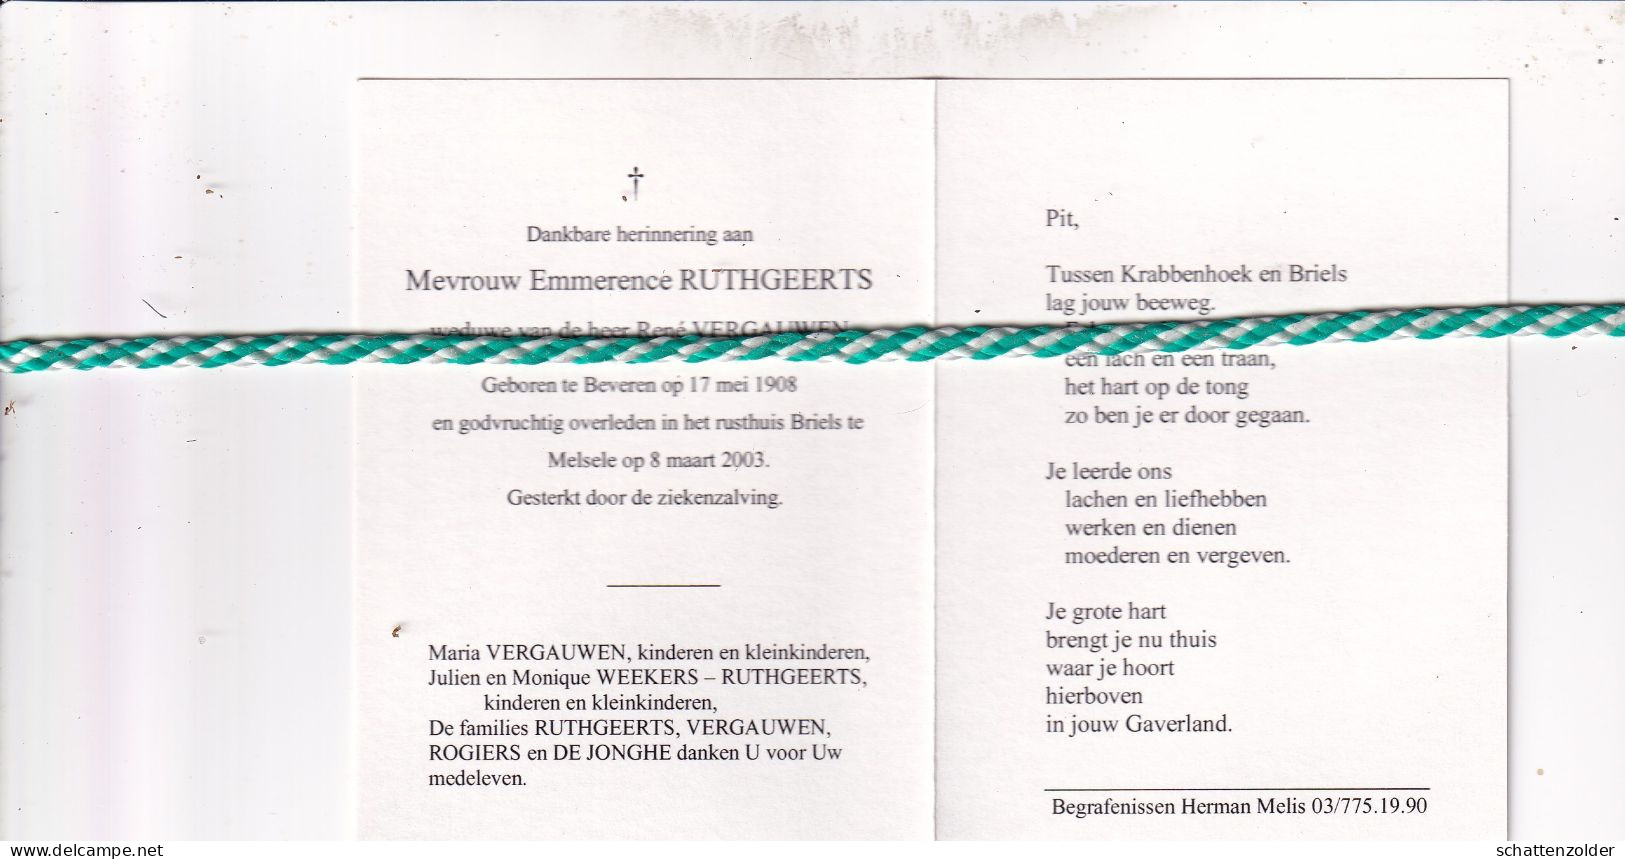 Emmerence Ruthgeerts-Vergauwen, Beveren 1908, Melsele 2003. Foto - Todesanzeige